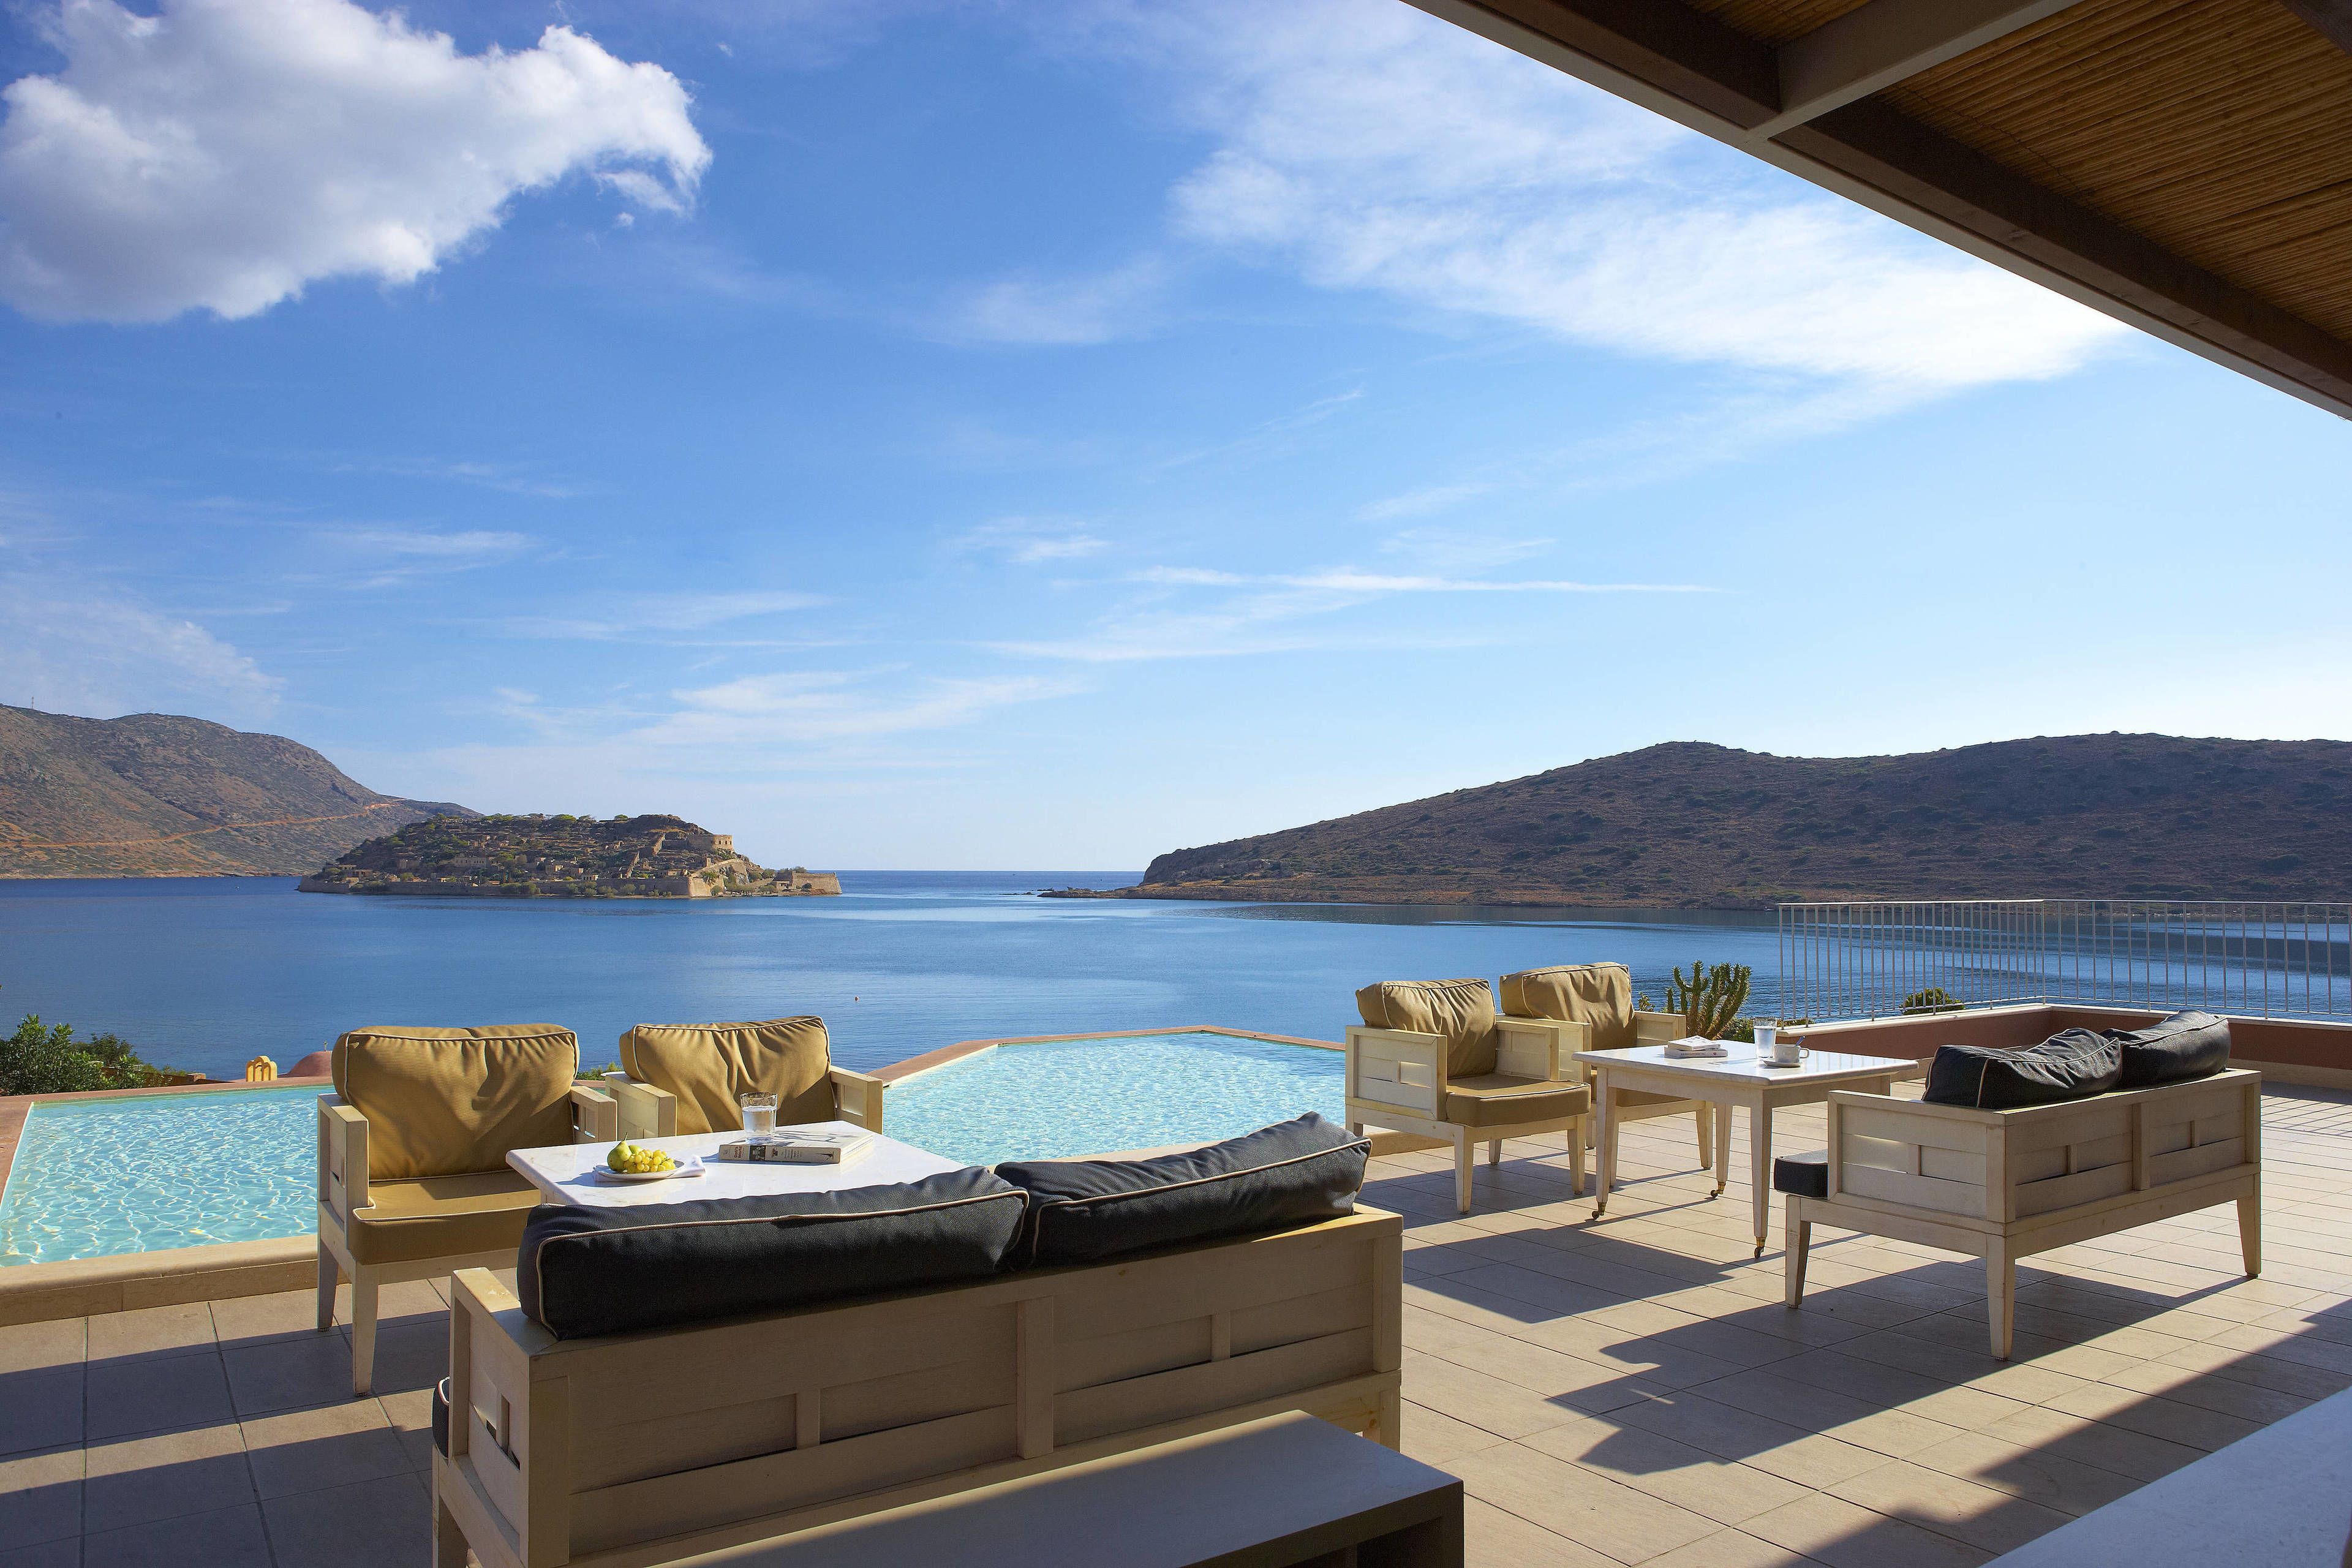 klud fløjl video The Best Luxury Hotels to Book in Crete, Greece